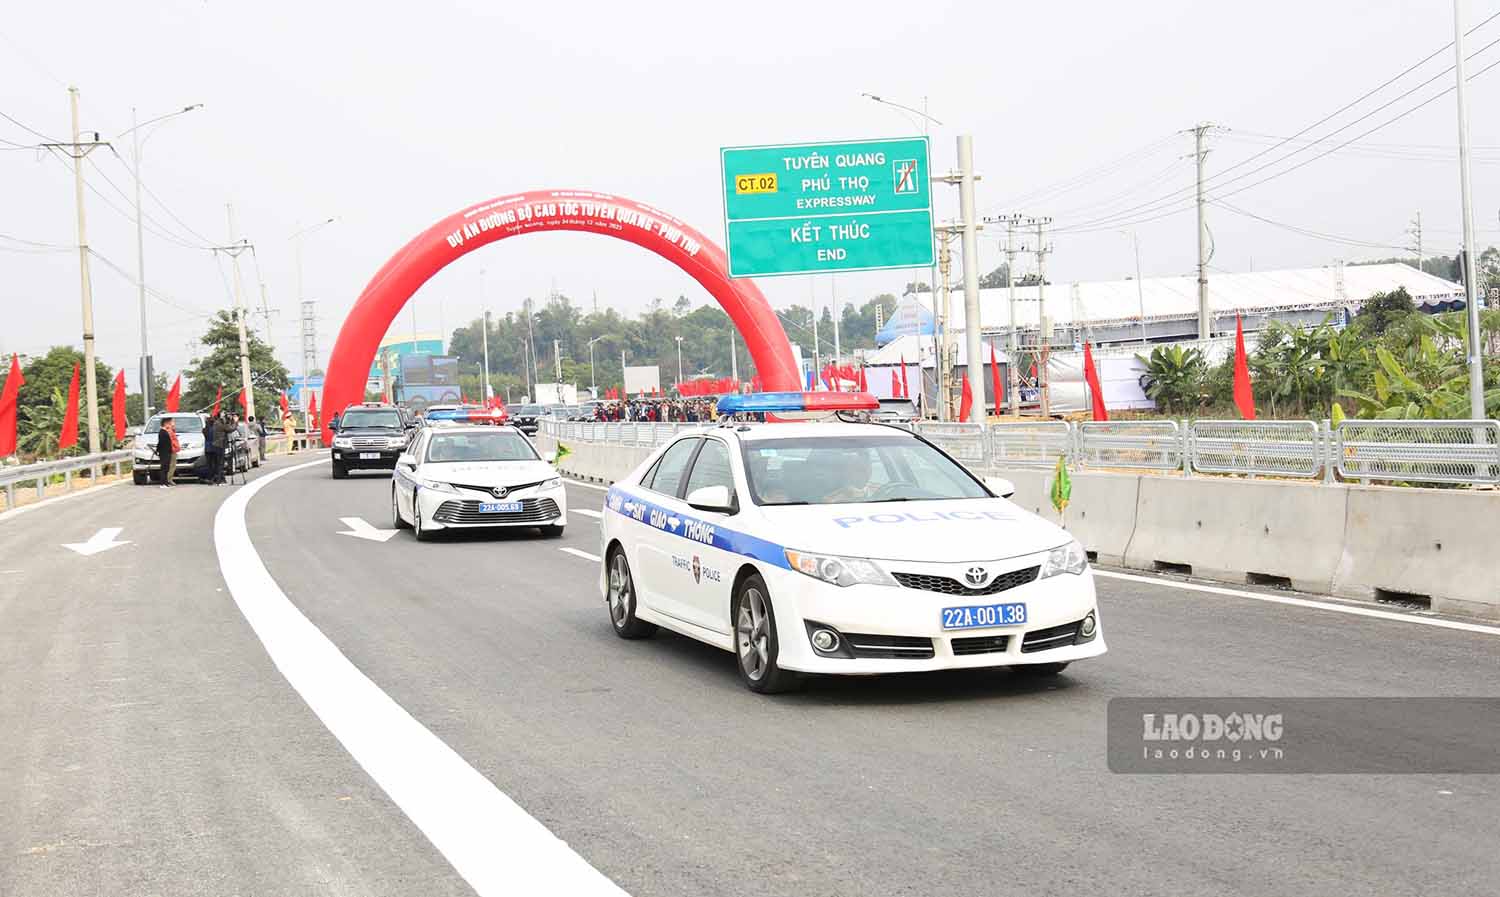 Cao tốc Tuyên Quang - Phú Thọ chính thức khánh thành, thông xe. Ảnh: Nguyễn Tùng